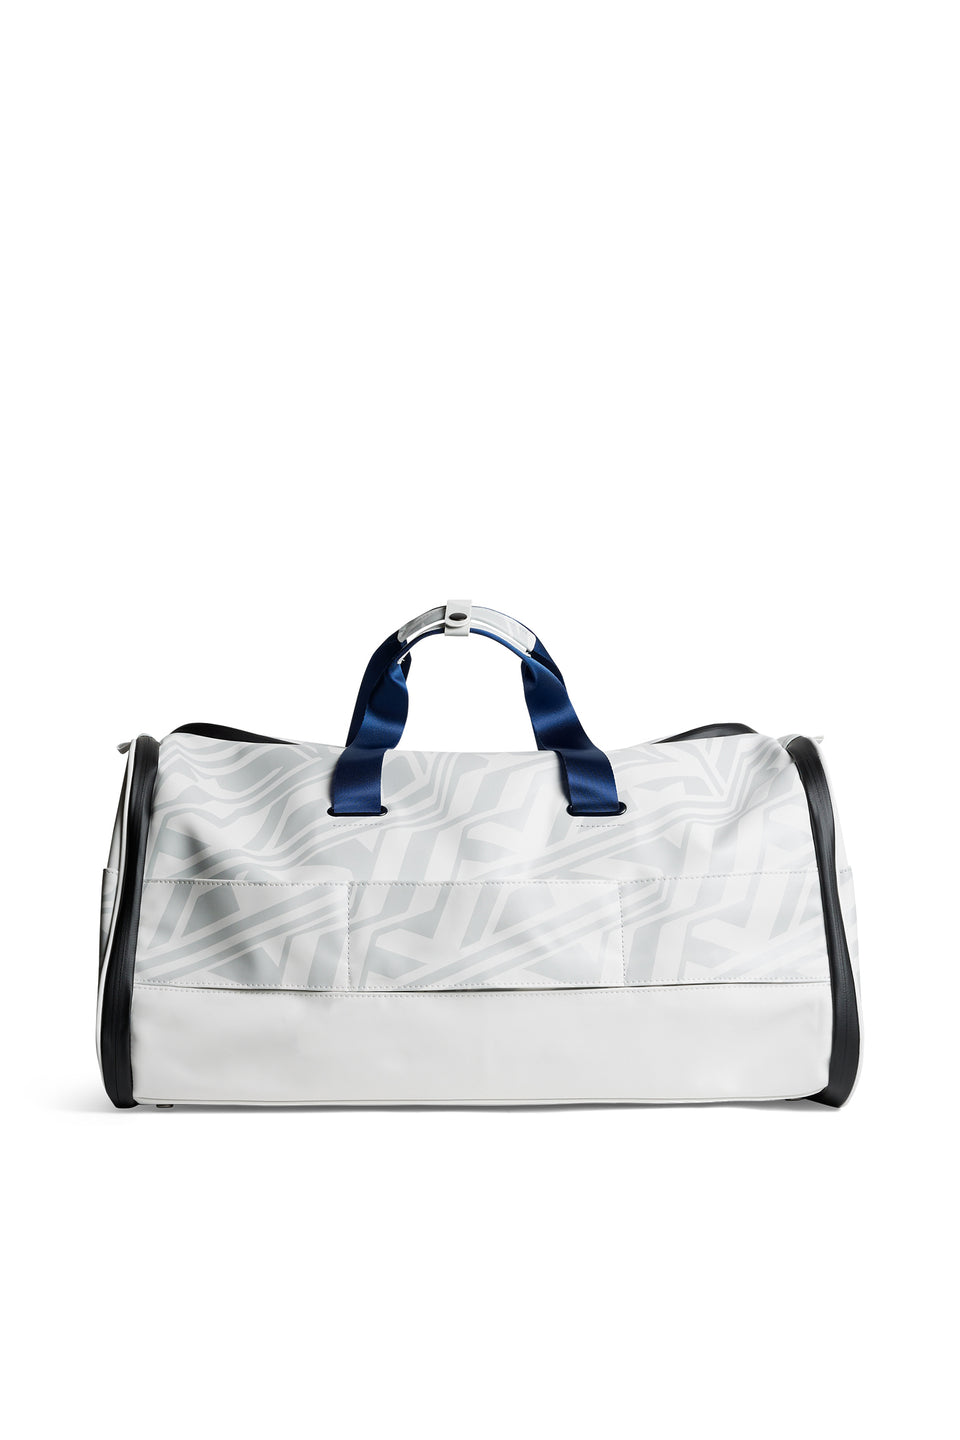 The Garment Duffel Bag / US Golf White